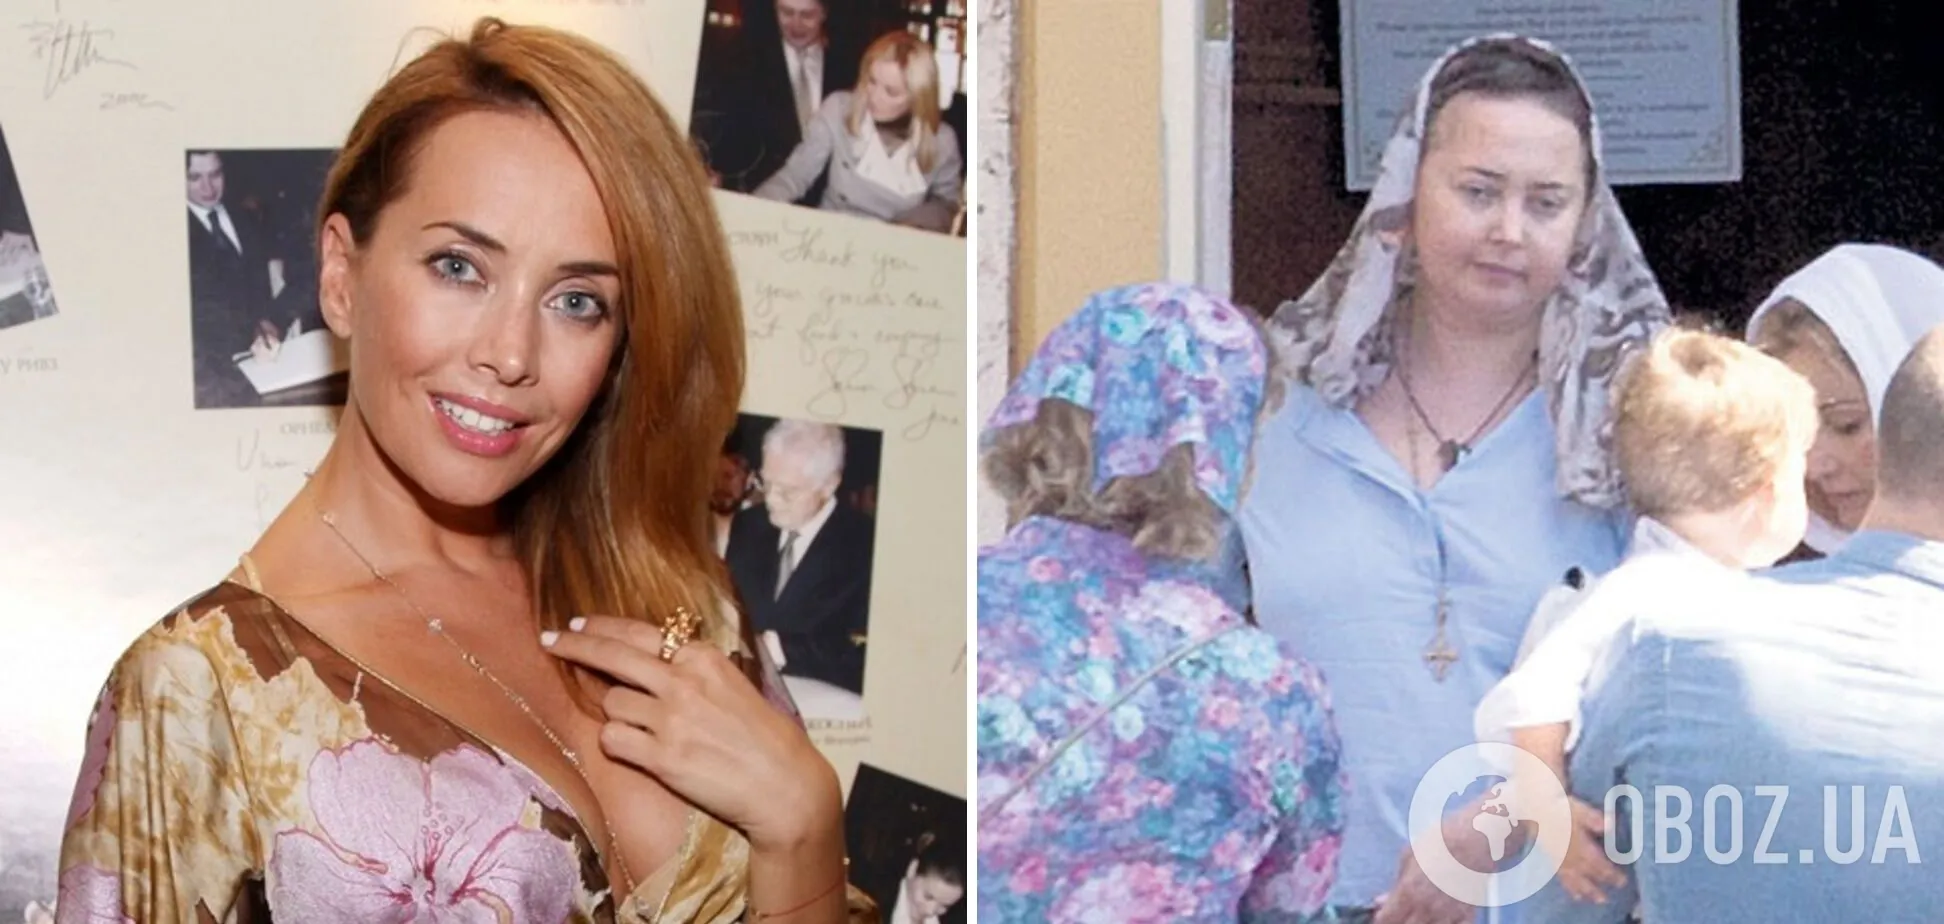 Анастасия Заворотнюк: Петр Чернышев попал на камеры с женщиной, похожей на актрису